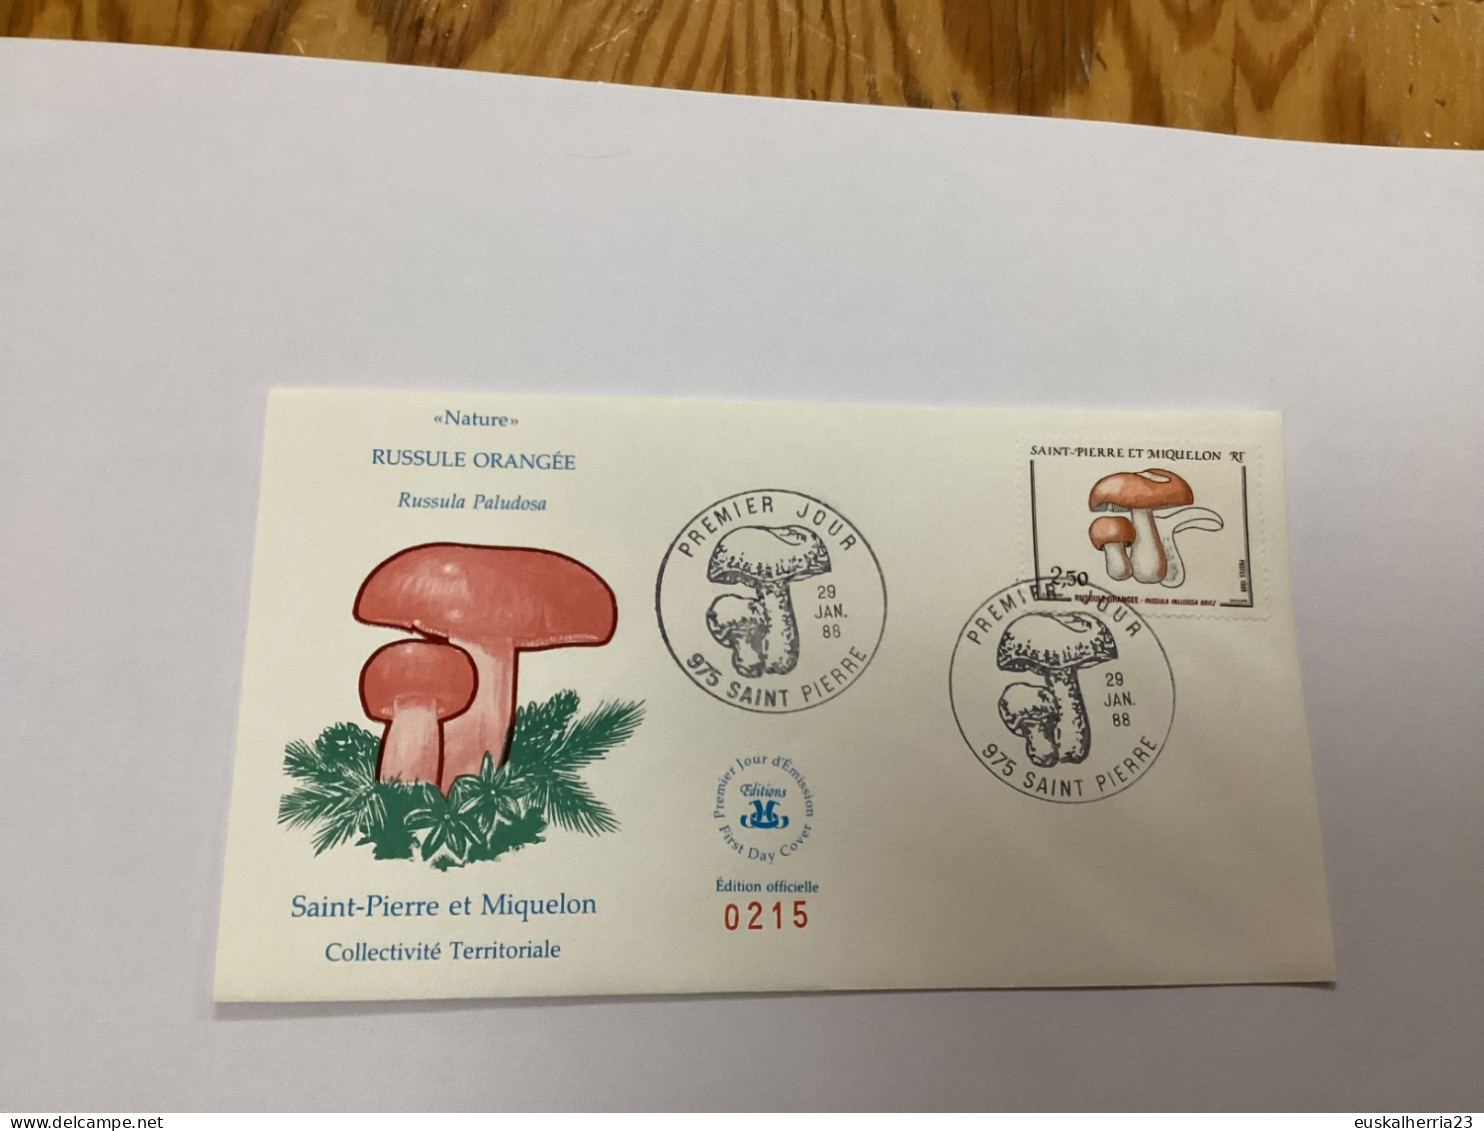 Enveloppe 1er Jour Saint-pierre Et Miquelon Russule Orangée 1988 - Used Stamps